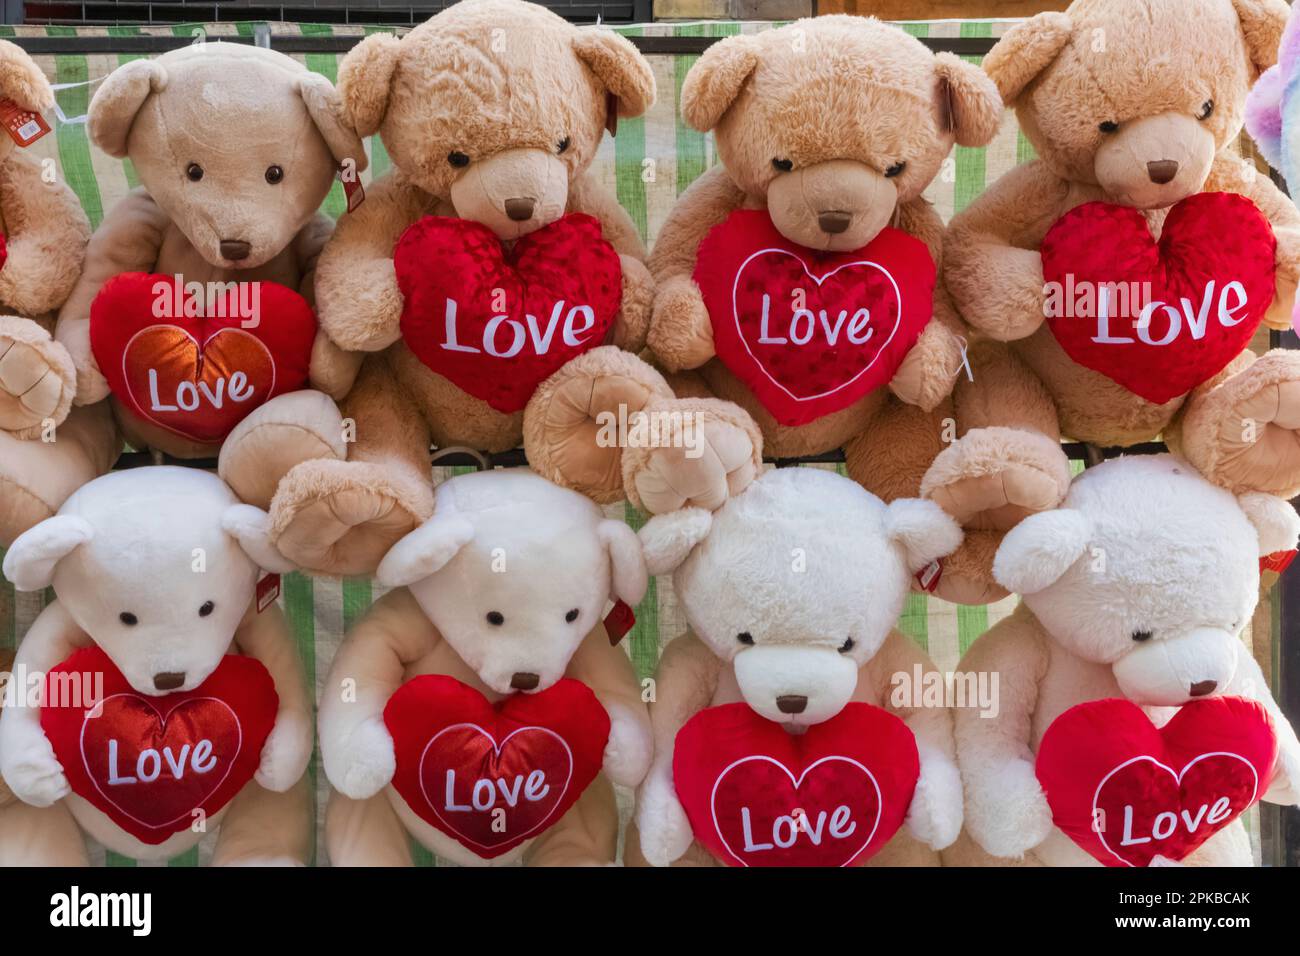 Angleterre, Londres, Spitalfields, marché de Petticoat Lane, exposition de Teddybears tenant des coeurs d'amour Banque D'Images